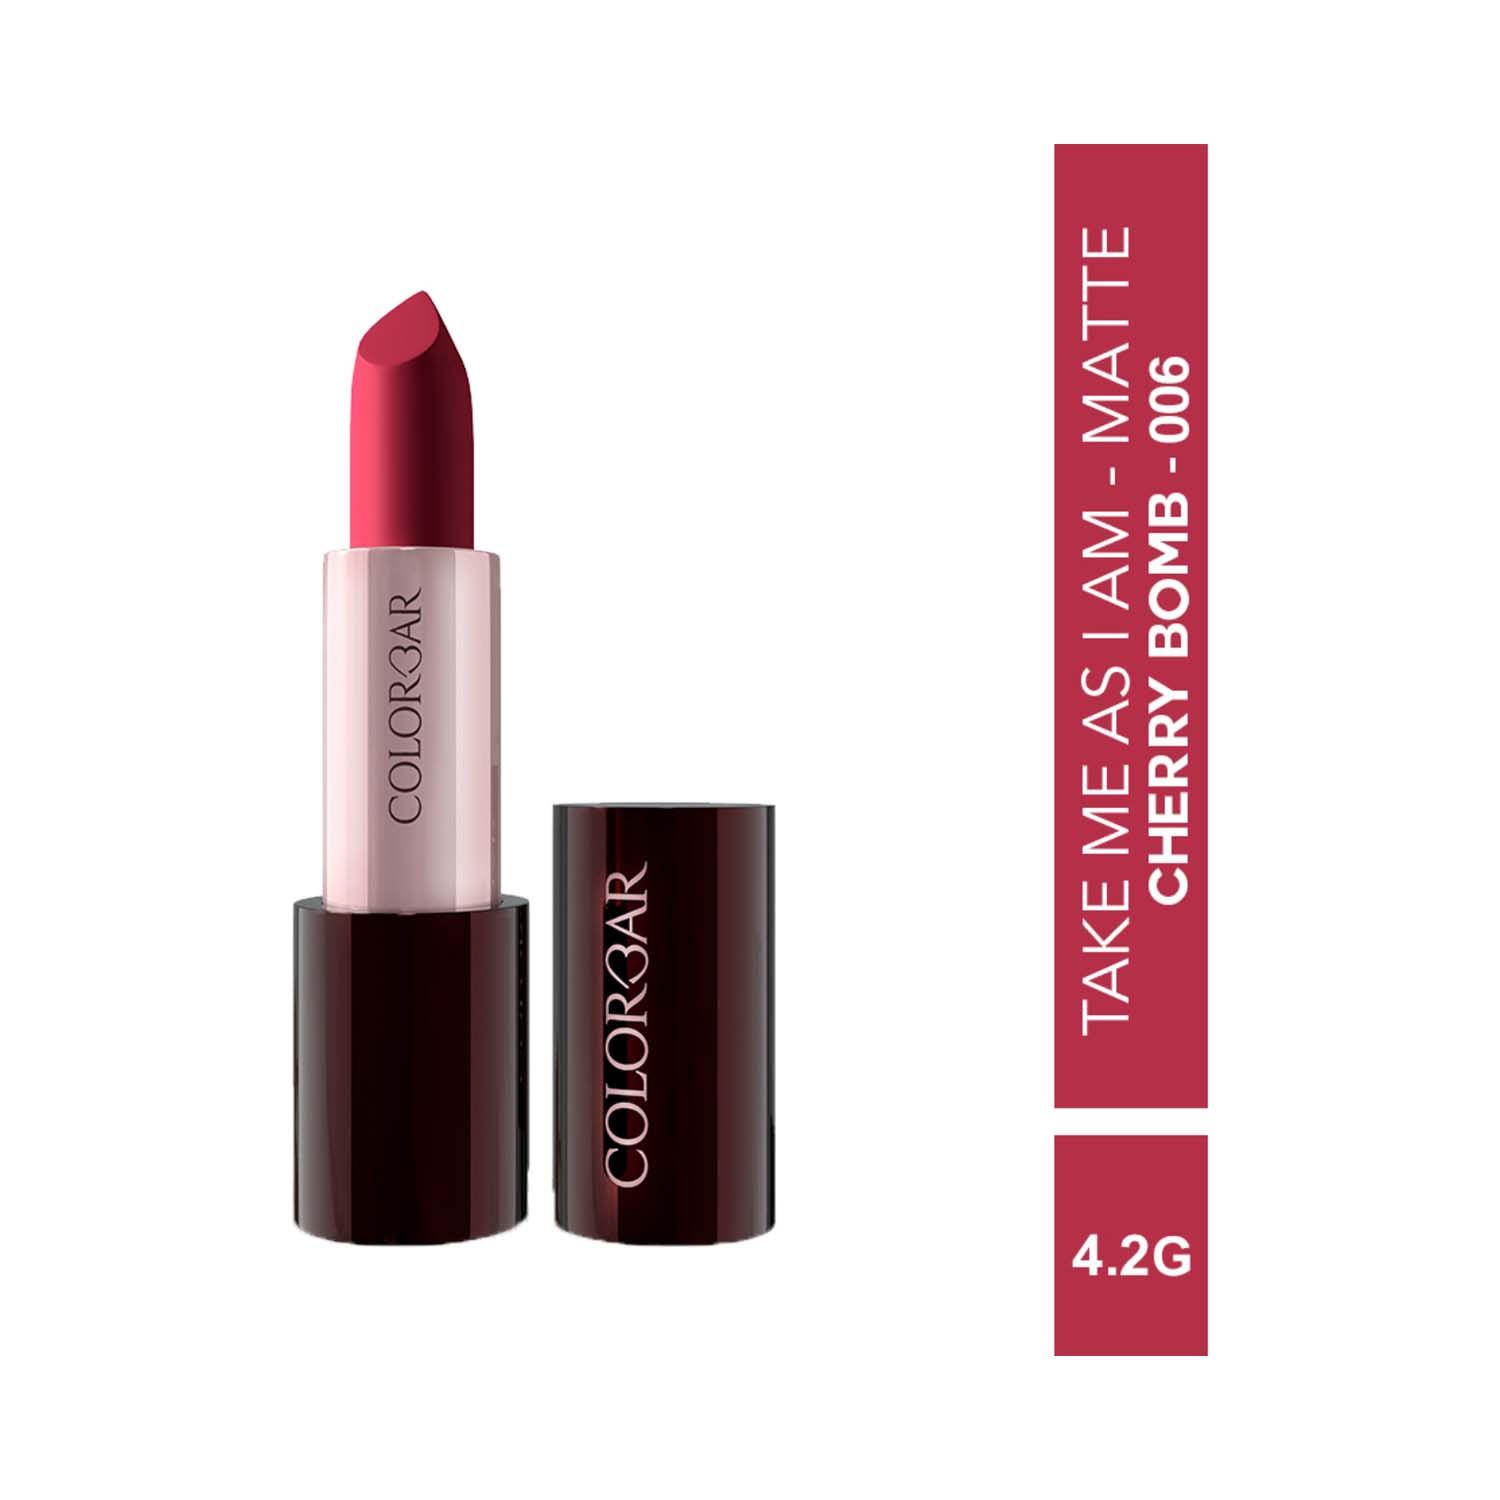 Colorbar | Colorbar Take Me As I Am Vegan Matte Lipstick - Cherry Bomb - [006] (4.2 g)